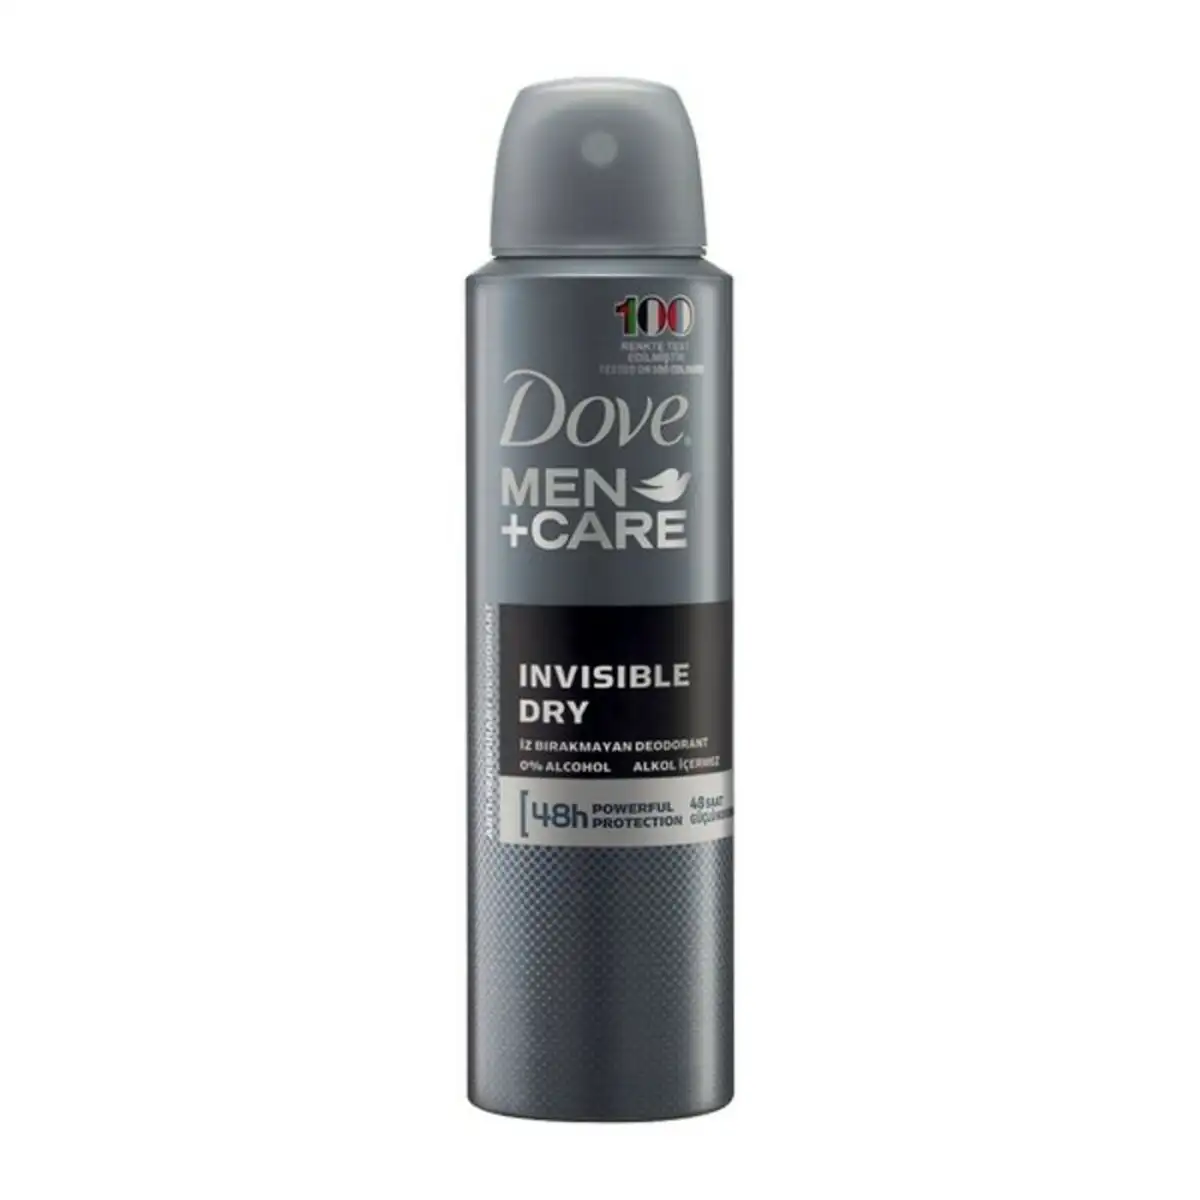 Spray deodorant men invisible dry dove 250 ml _7041. DIAYTAR SENEGAL - L'Art du Shopping Facilité. Naviguez sur notre plateforme en ligne pour découvrir une expérience d'achat fluide et agréable, avec une gamme de produits adaptés à tous.